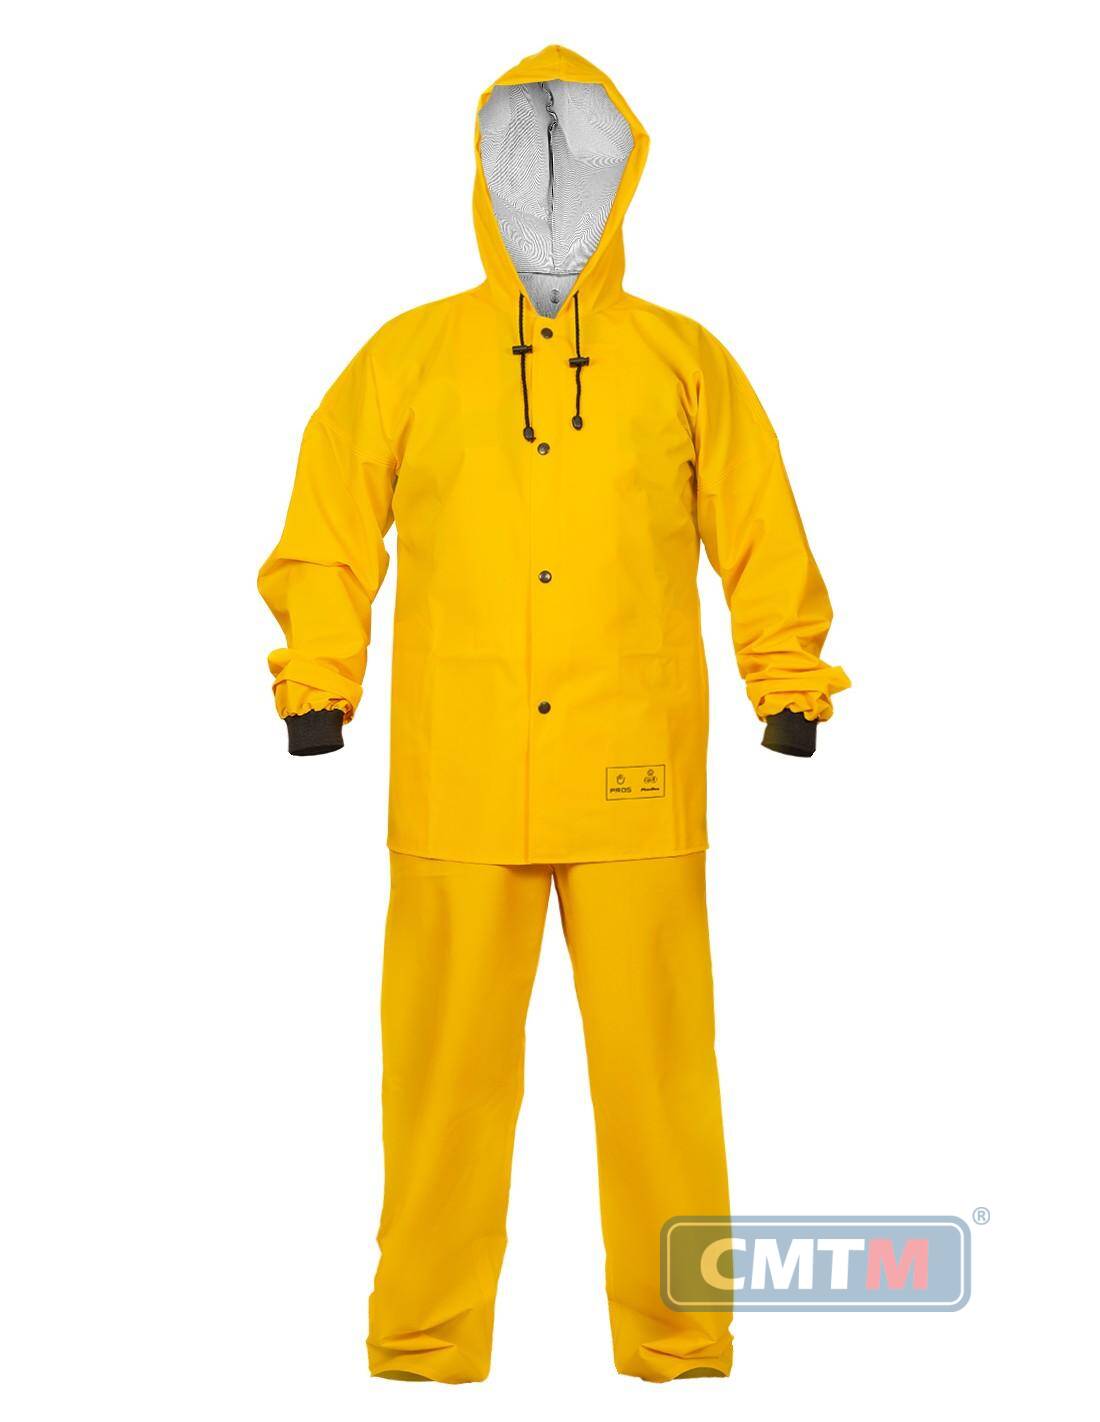 Ubranie wodoochronne AJ 101/001 żółte, rozmiar 60 XXXL